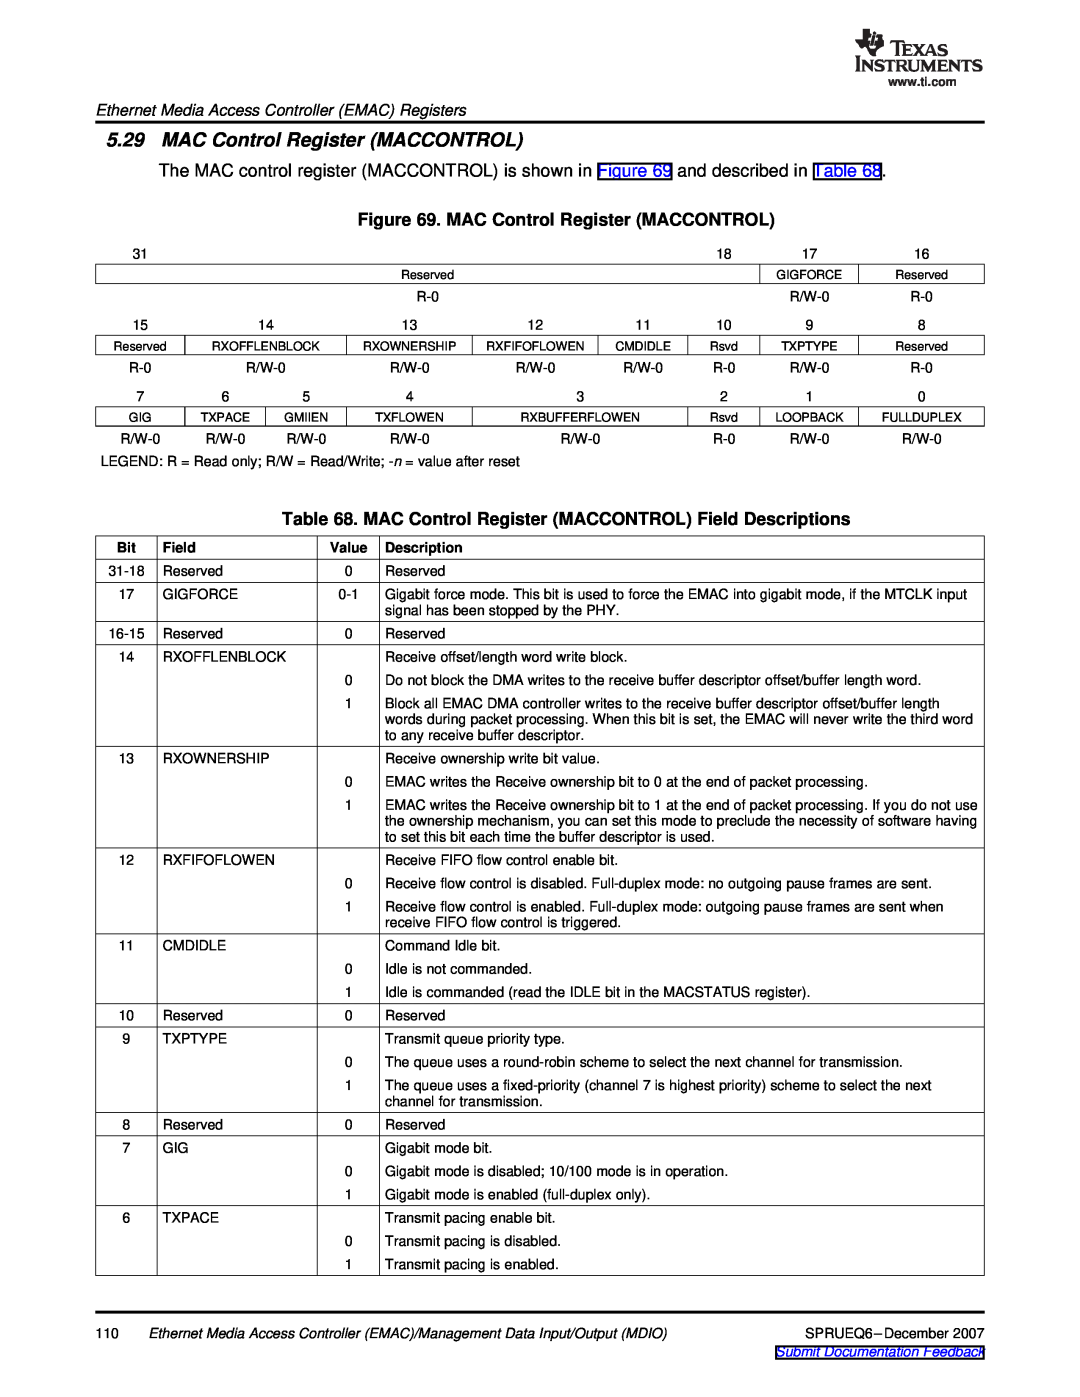 Texas Instruments TMS320DM646x manual MAC Control Register MACCONTROL Field Descriptions, Value 